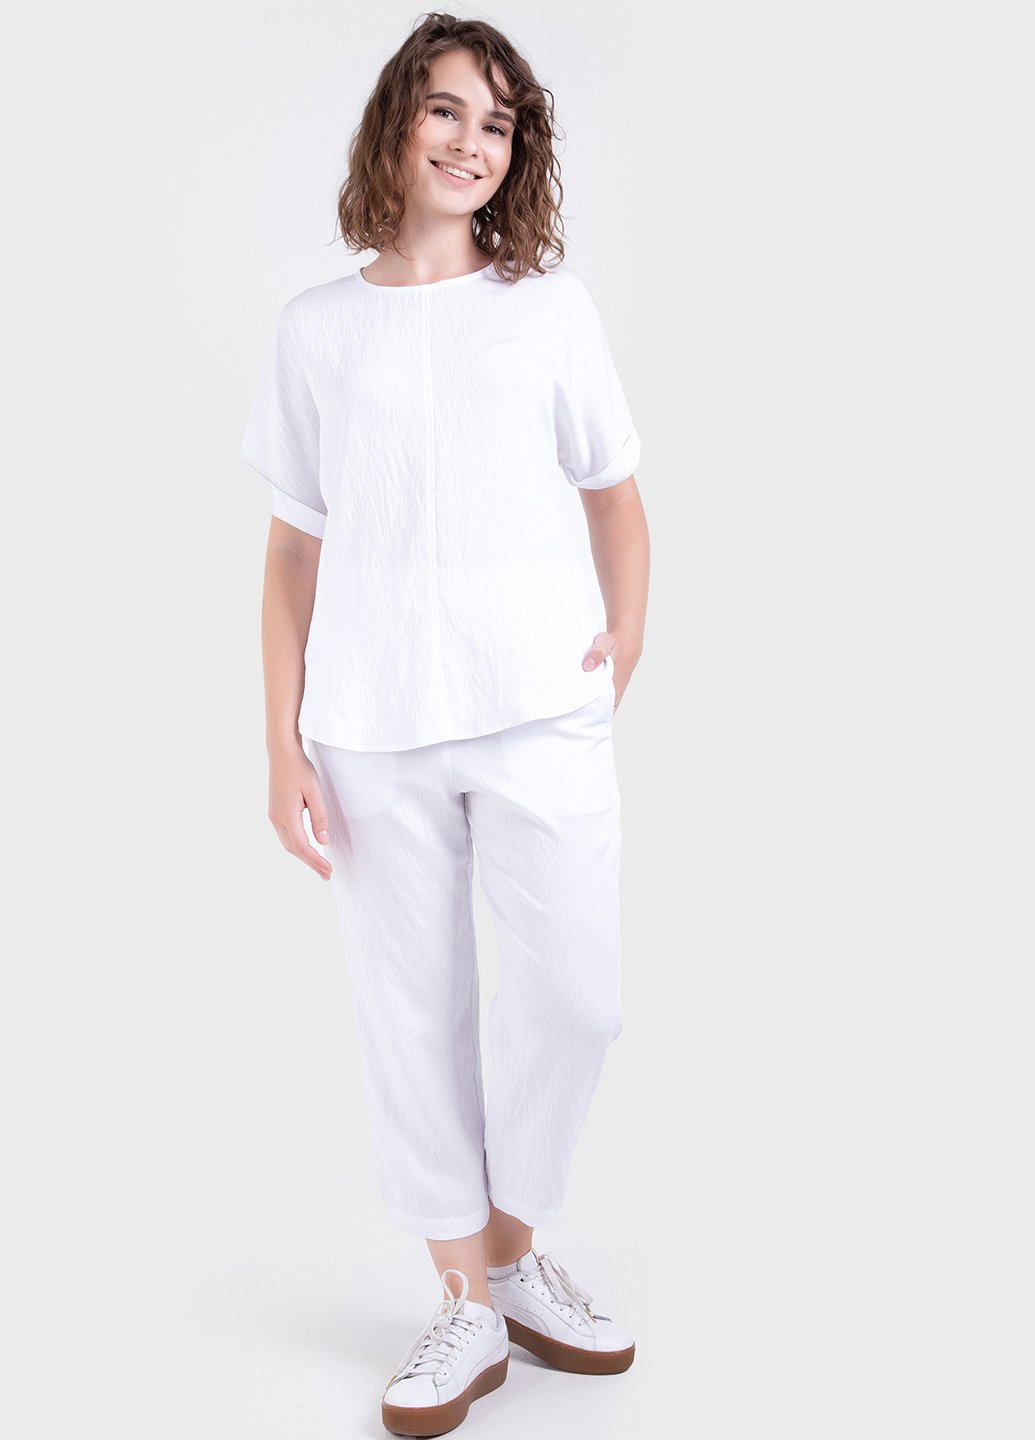 Купить Летний костюм женский двойка белого цвета: брюки, футболка Merlini Санремо 100000148, размер 42-44 в интернет-магазине